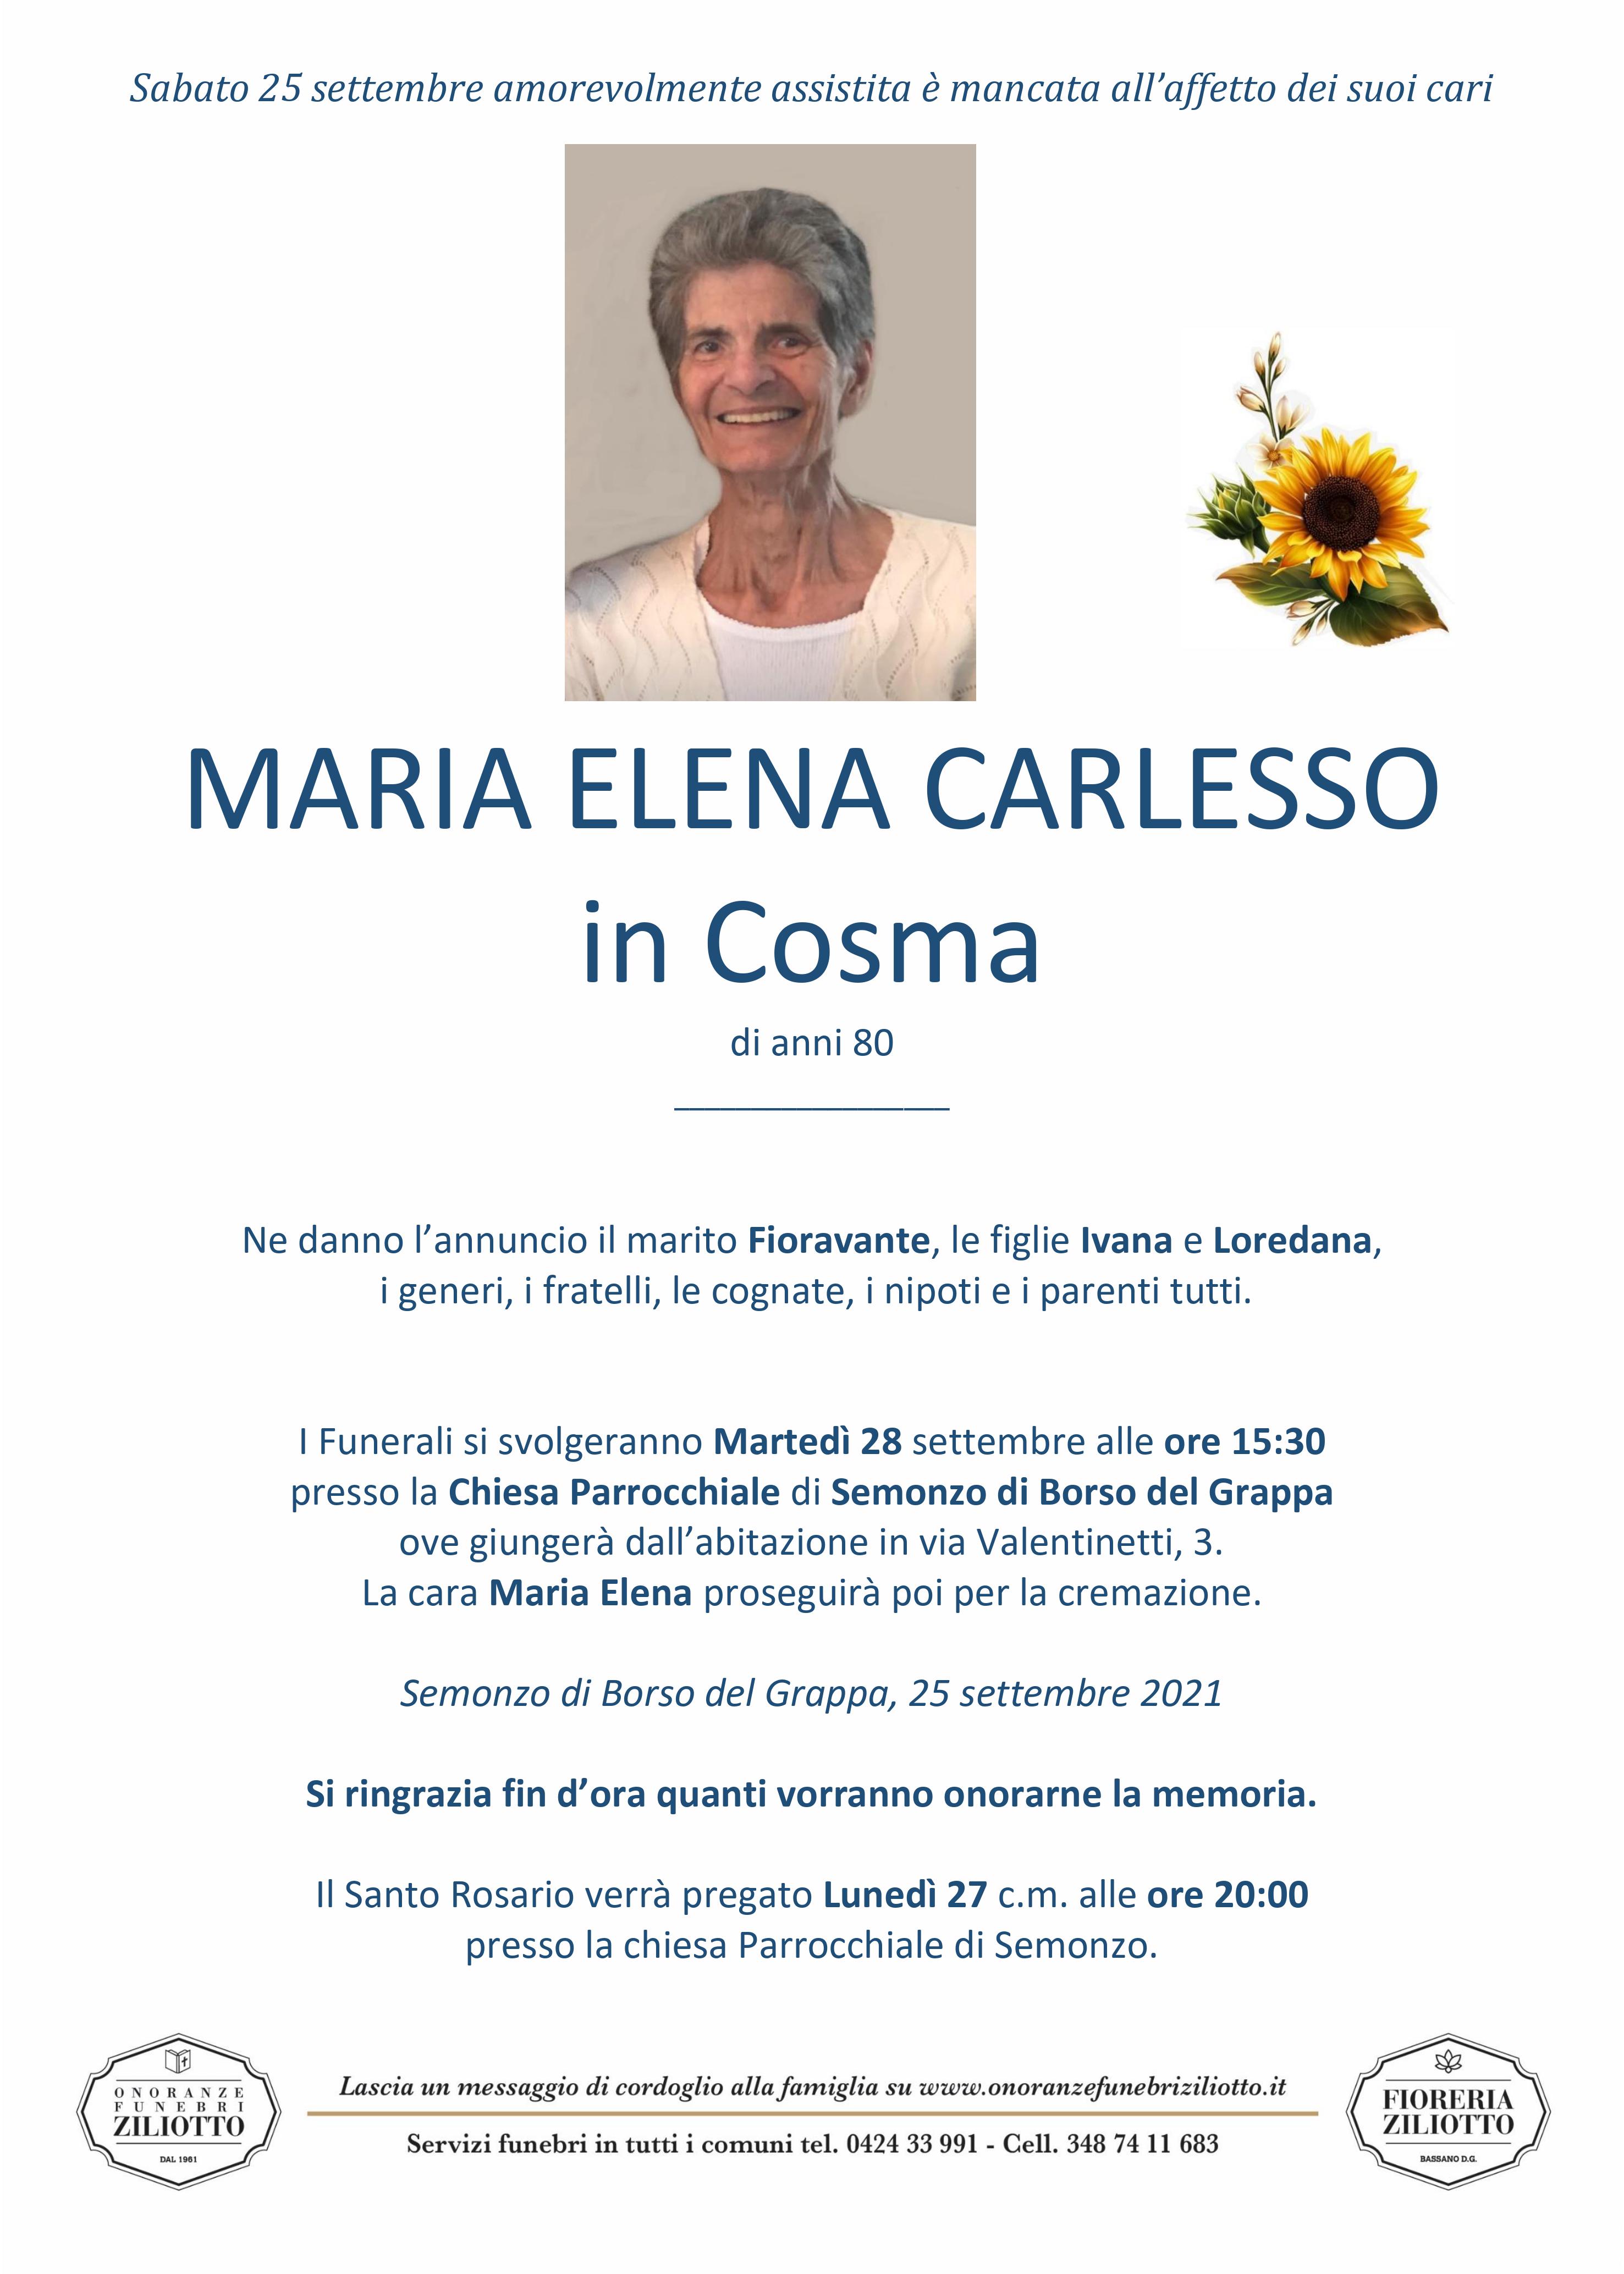 Carlesso Maria Elena - 80 anni - Semonzo